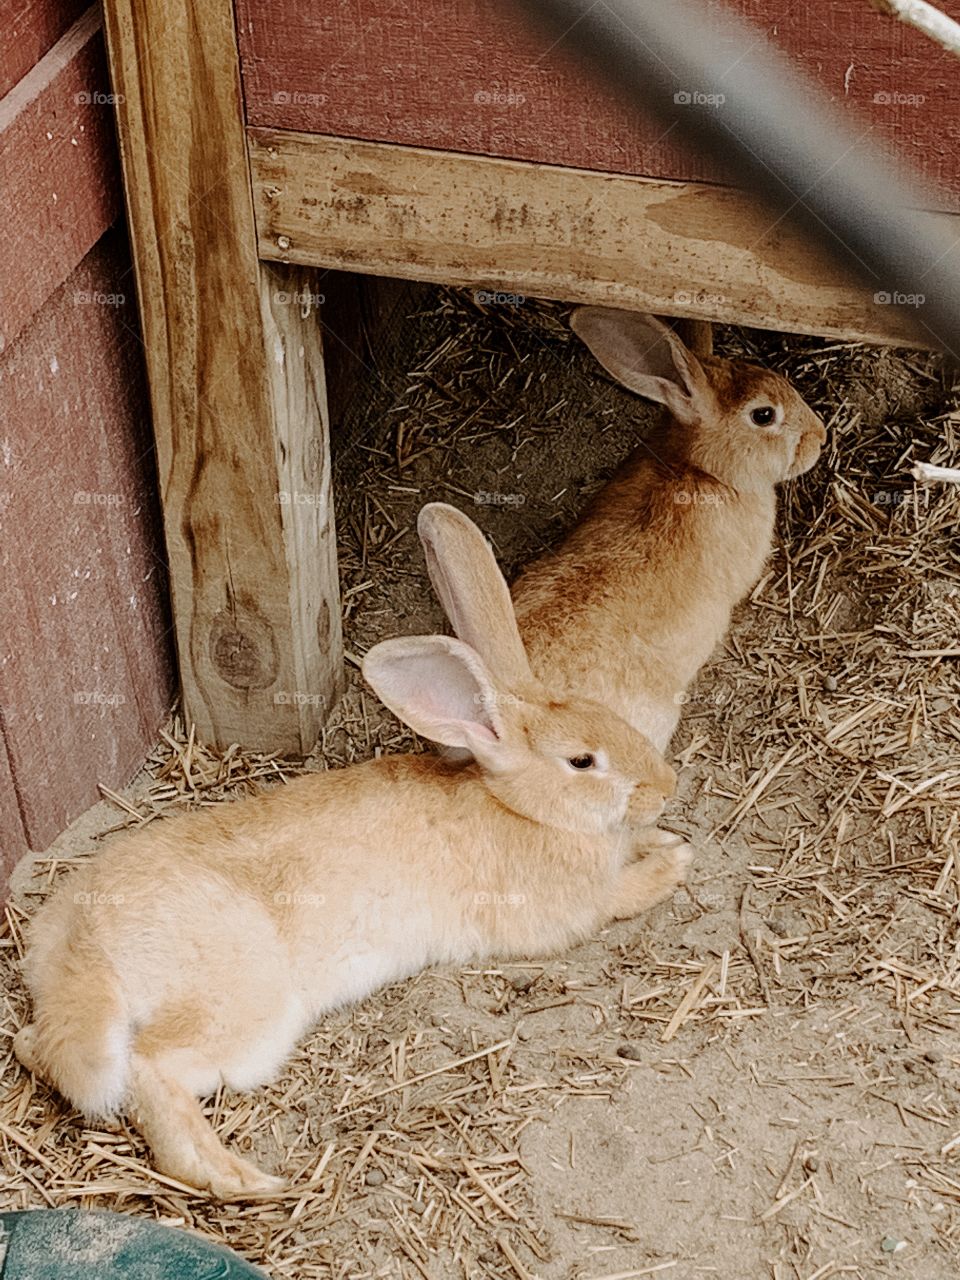 Brown rabbits